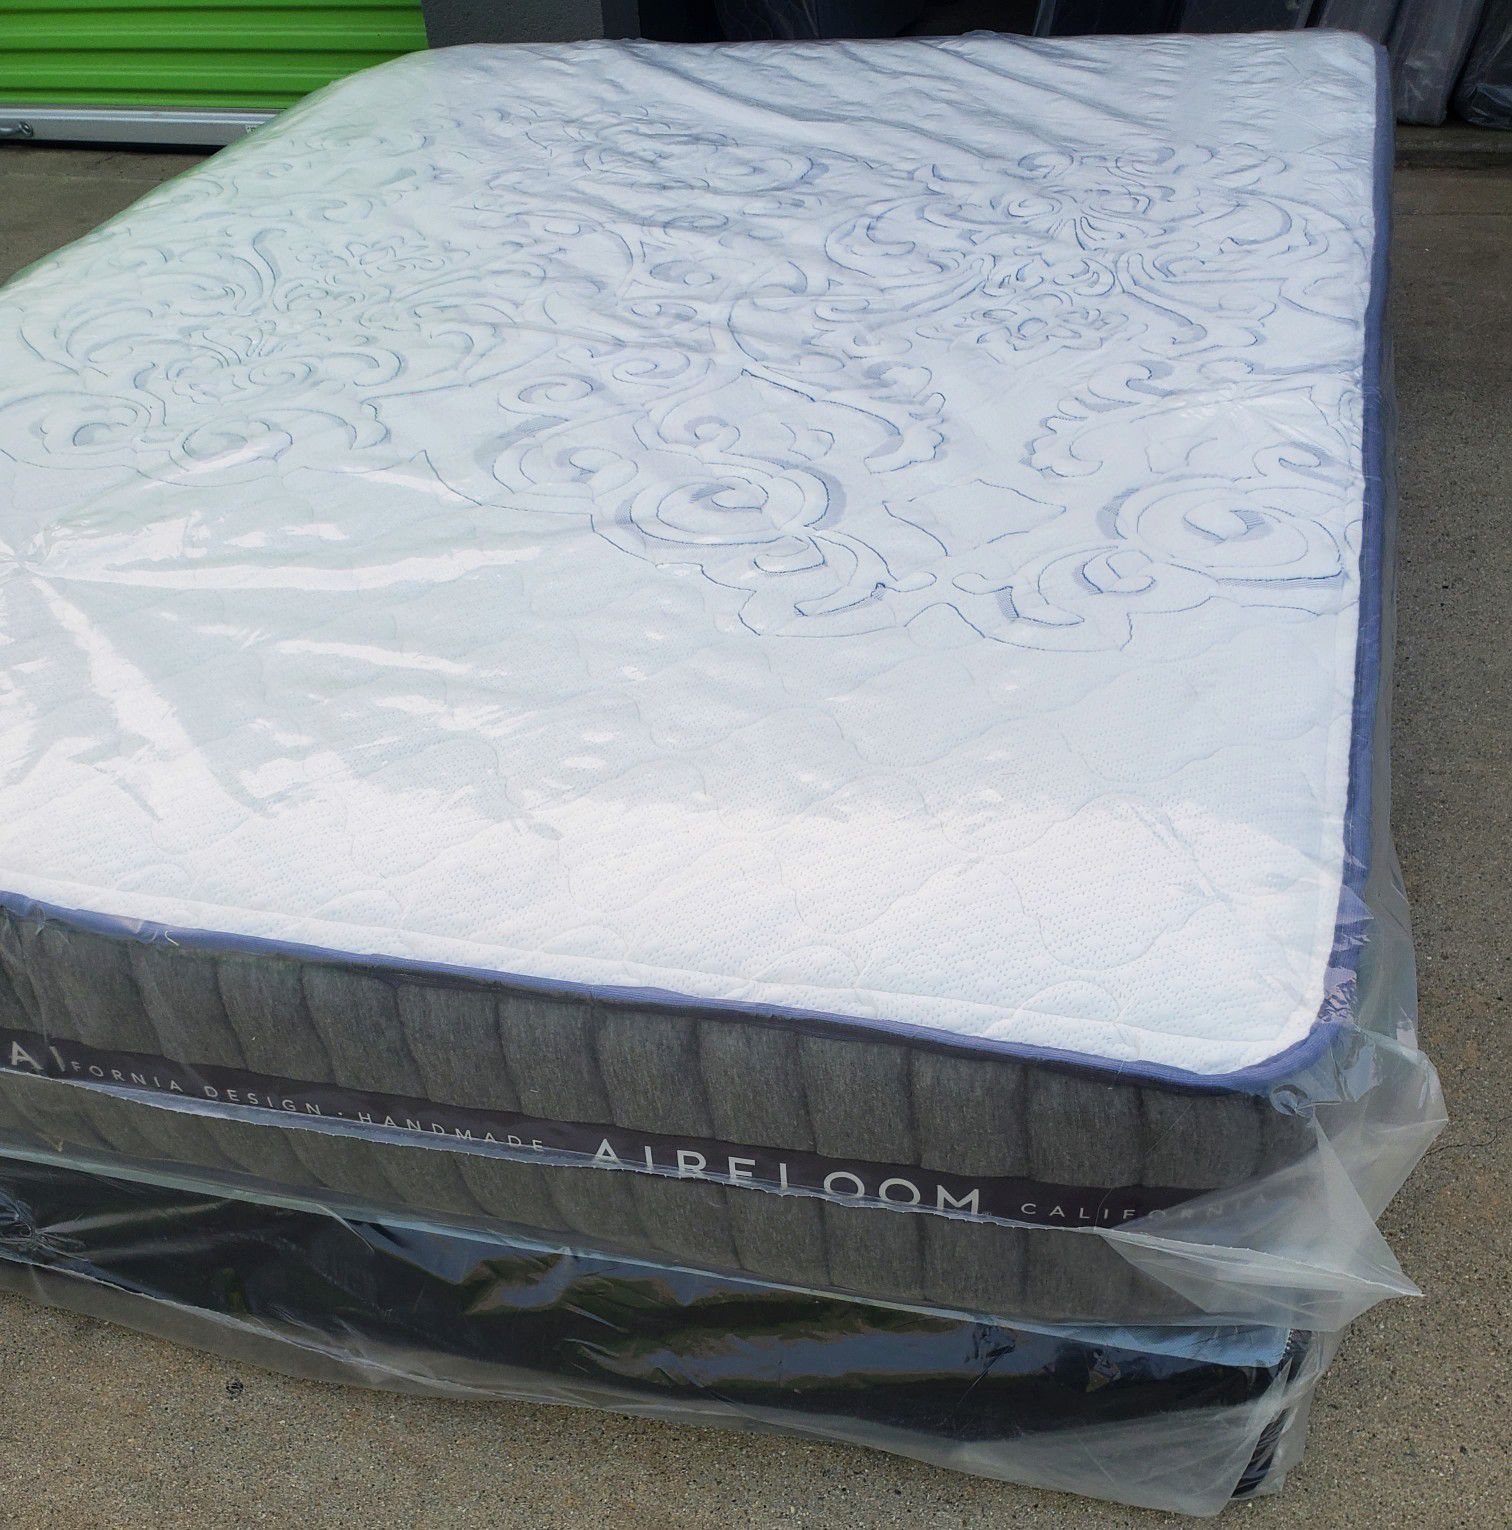 Regular queen set mattress aireloom 11"thick